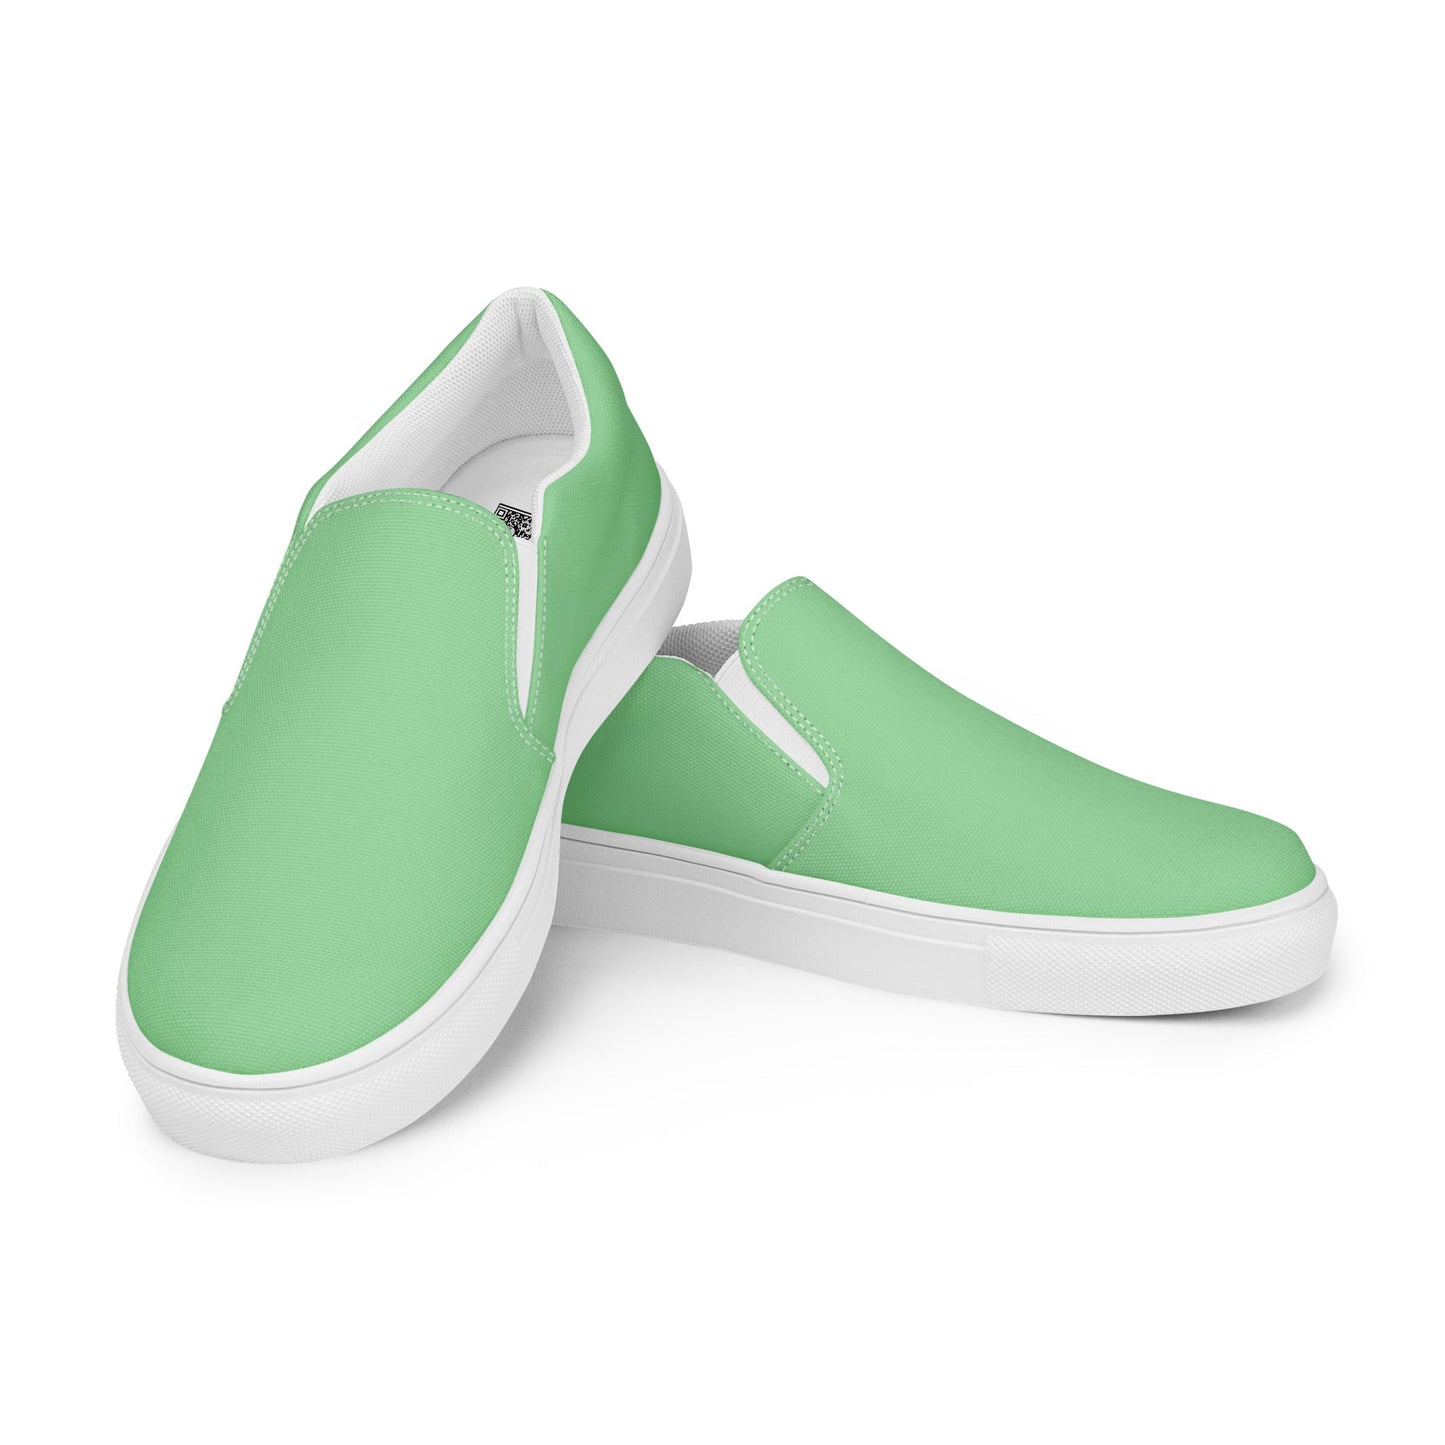 klasneakers Men’s slip-on canvas shoes - Mint